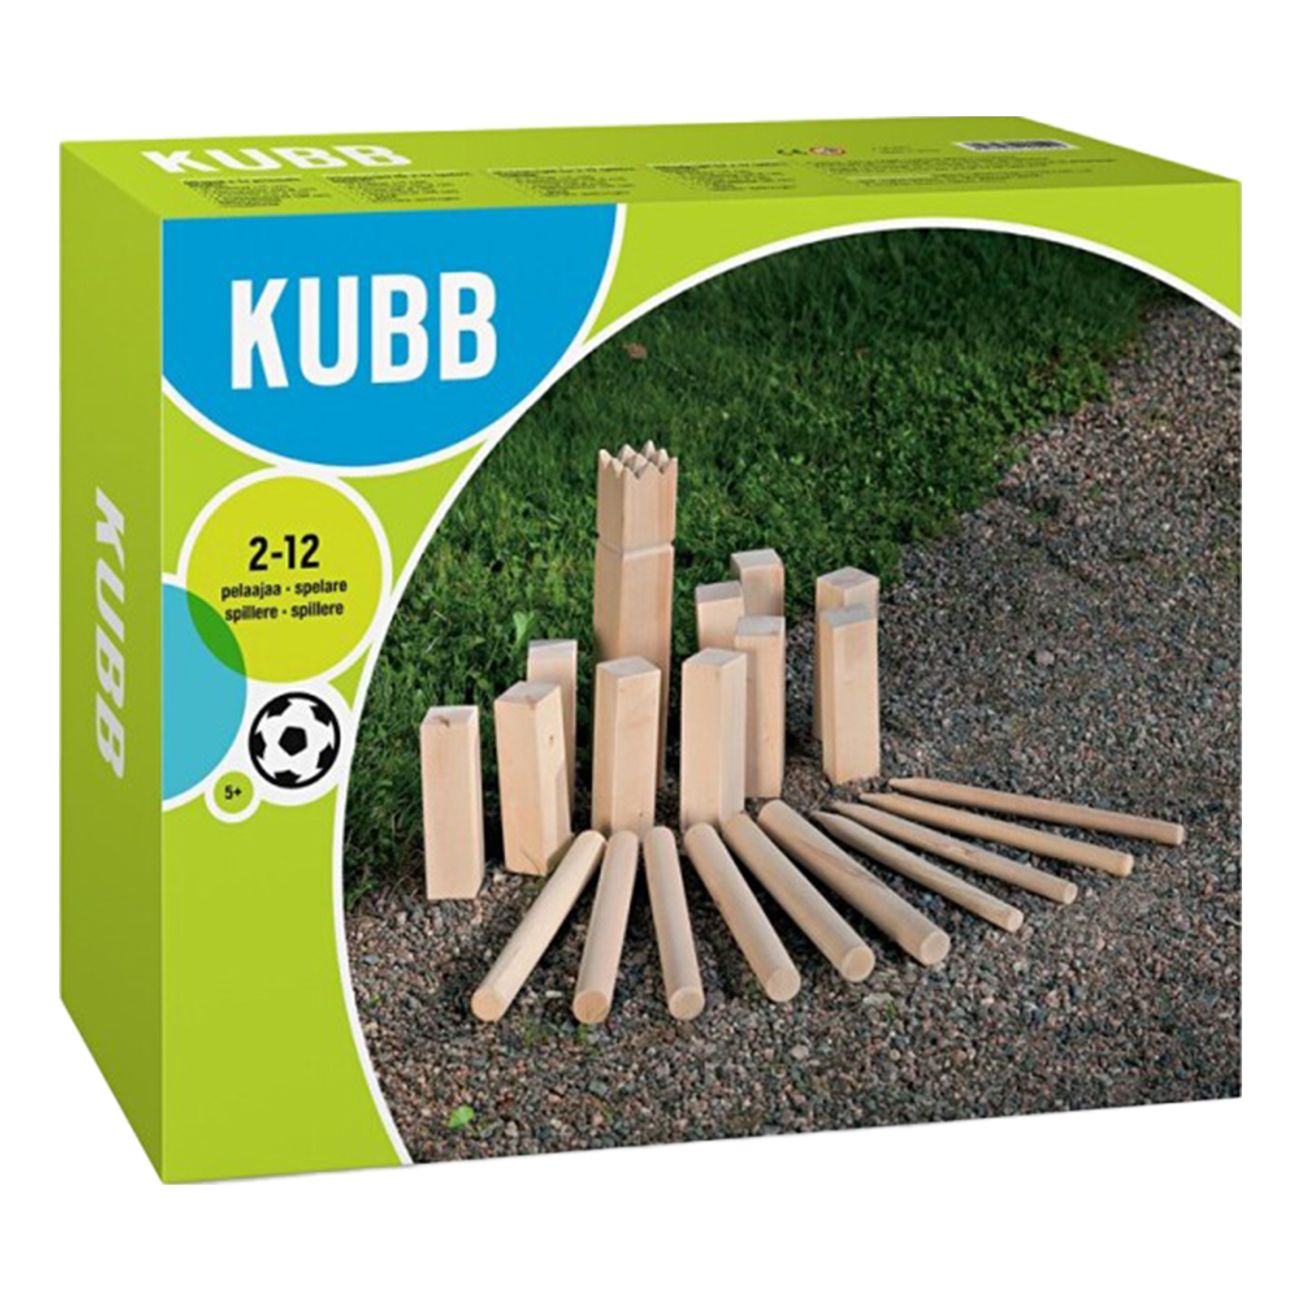 ss-kubb-box-86253-1